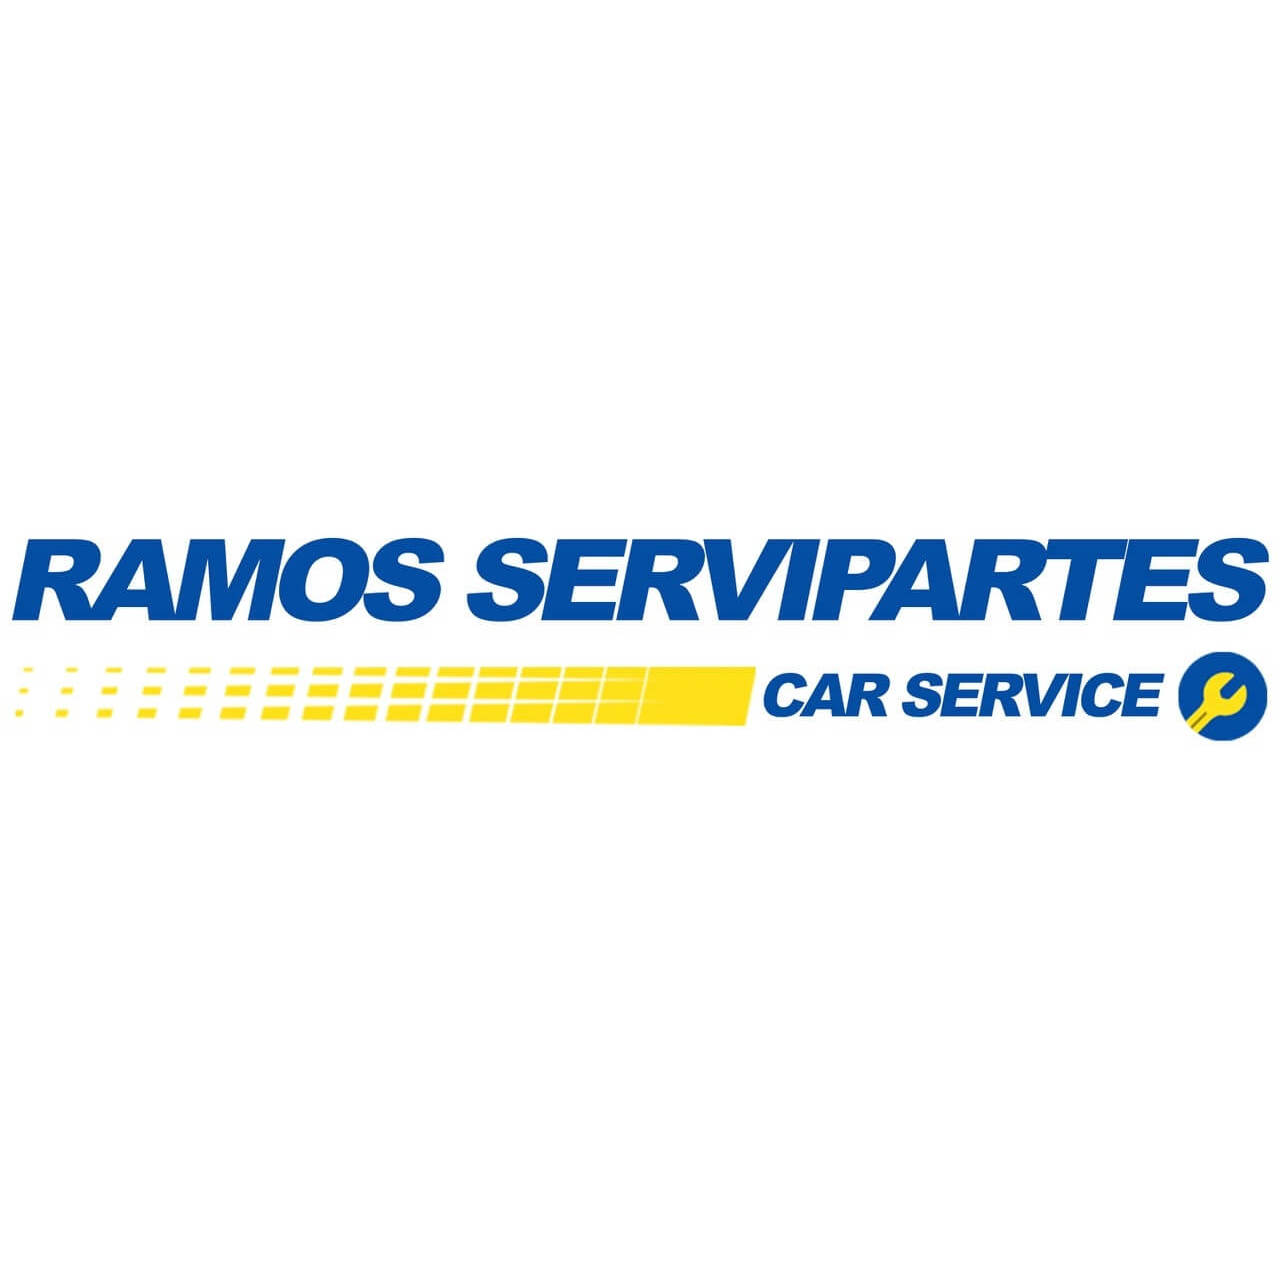 Ramos Servipartes Car Service Rioverde #3 Logo